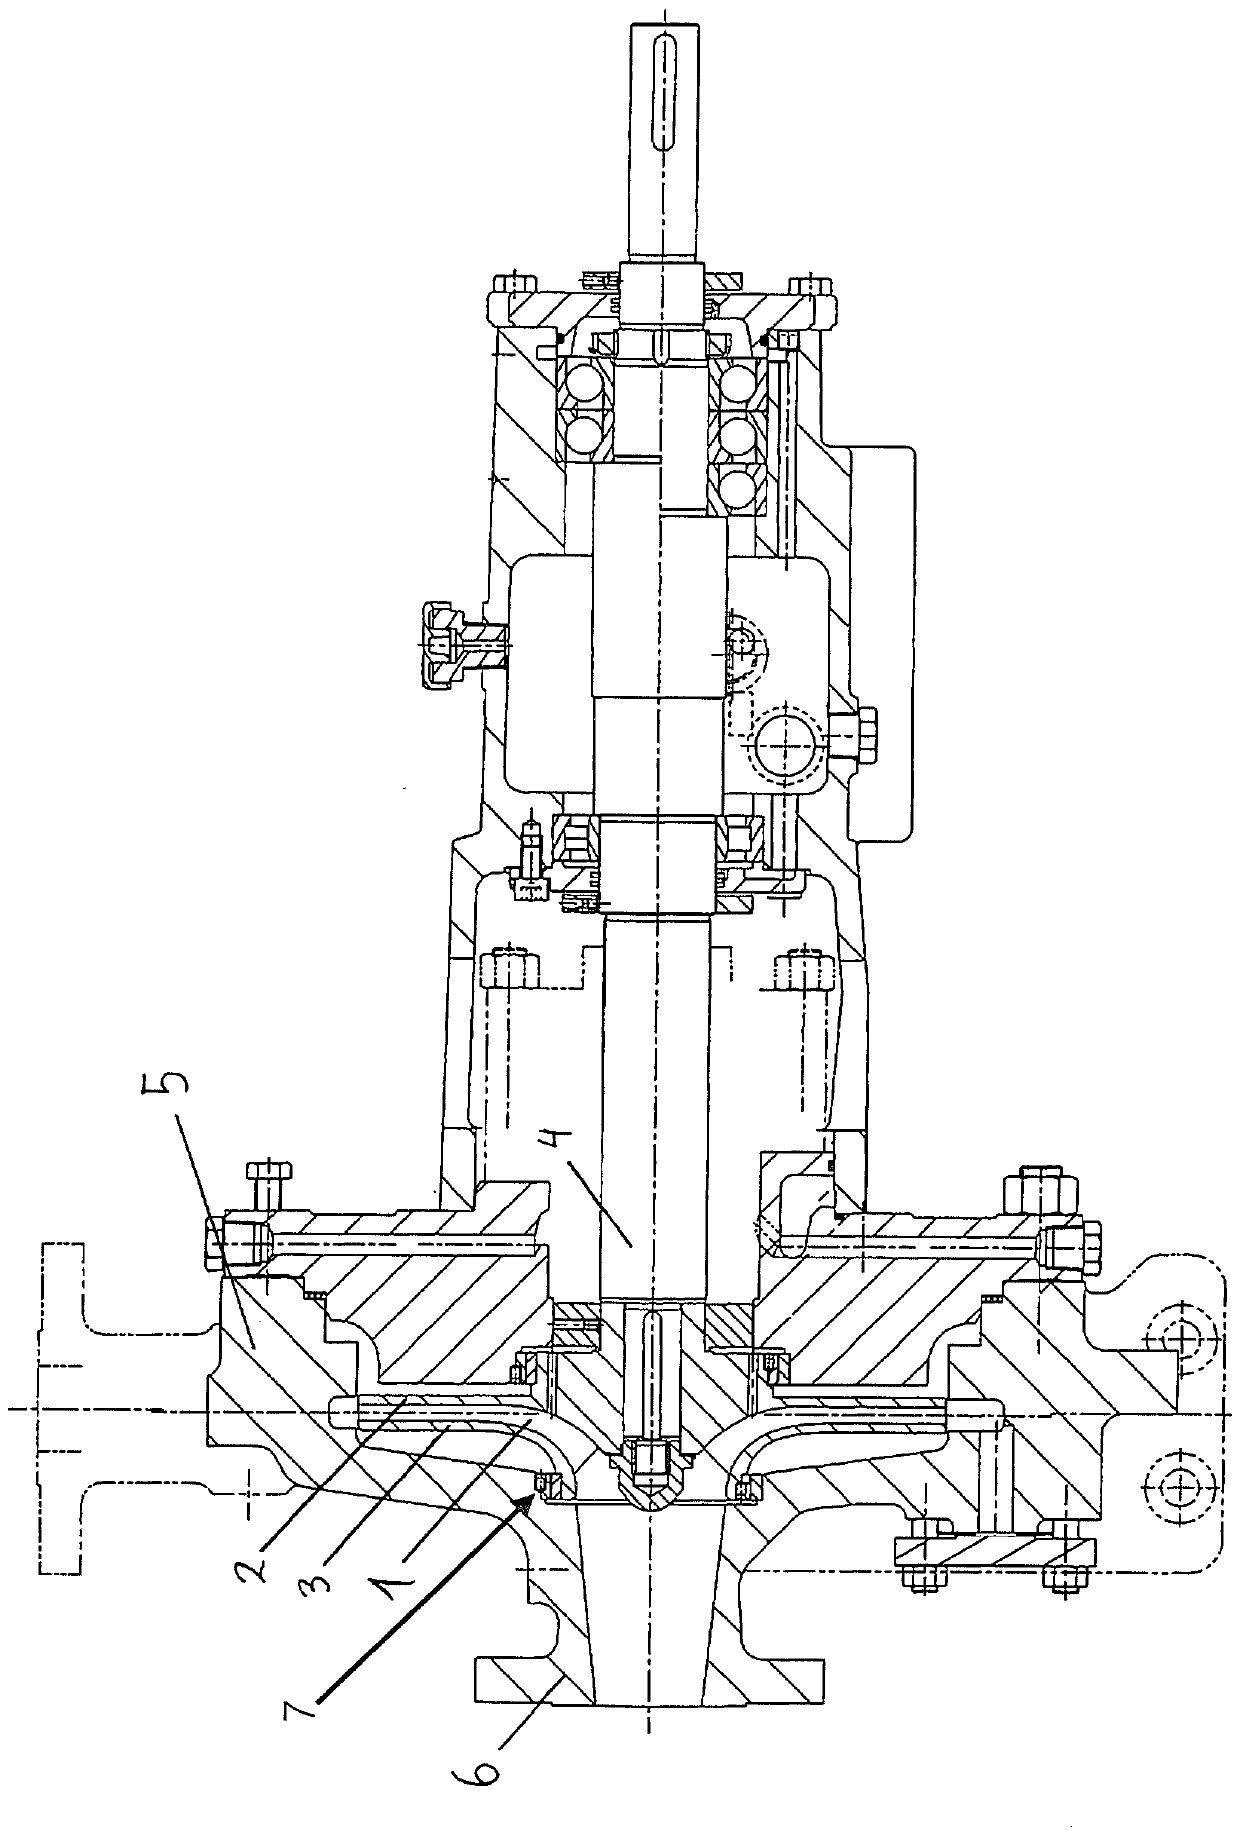 Centrifugal pump having a radial impeller